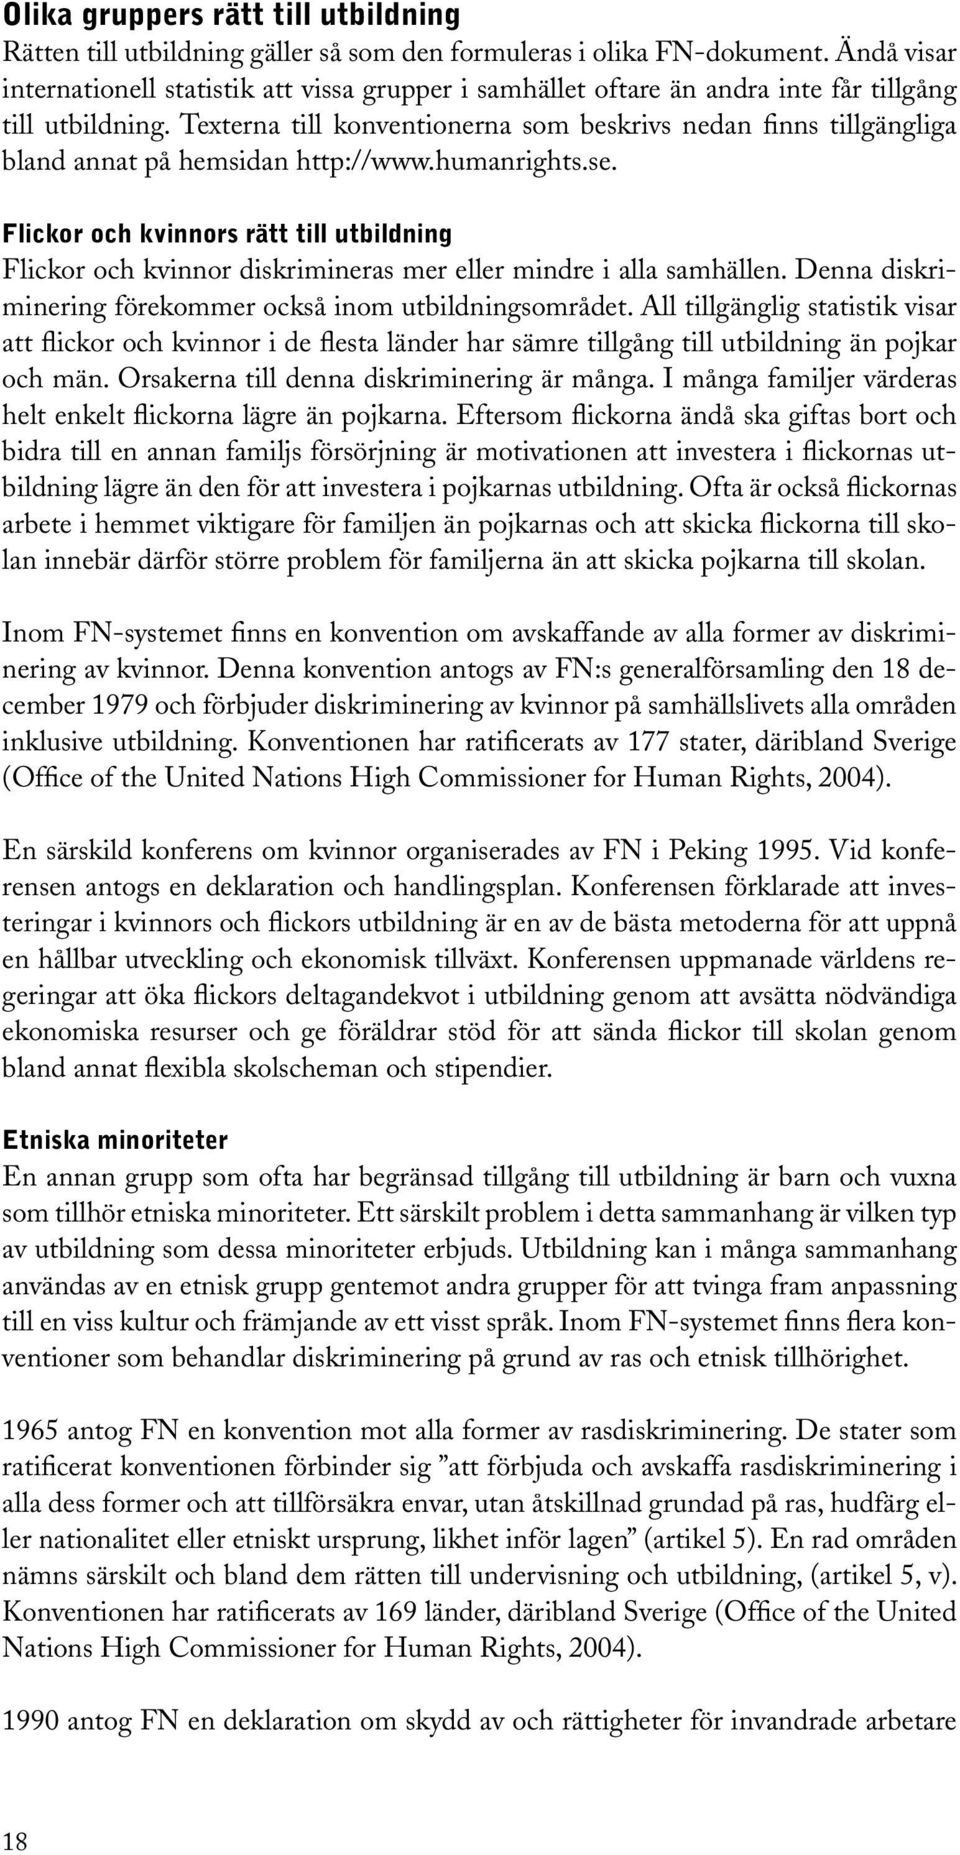 Texterna till konventionerna som beskrivs nedan finns tillgängliga bland annat på hemsidan http://www.humanrights.se.